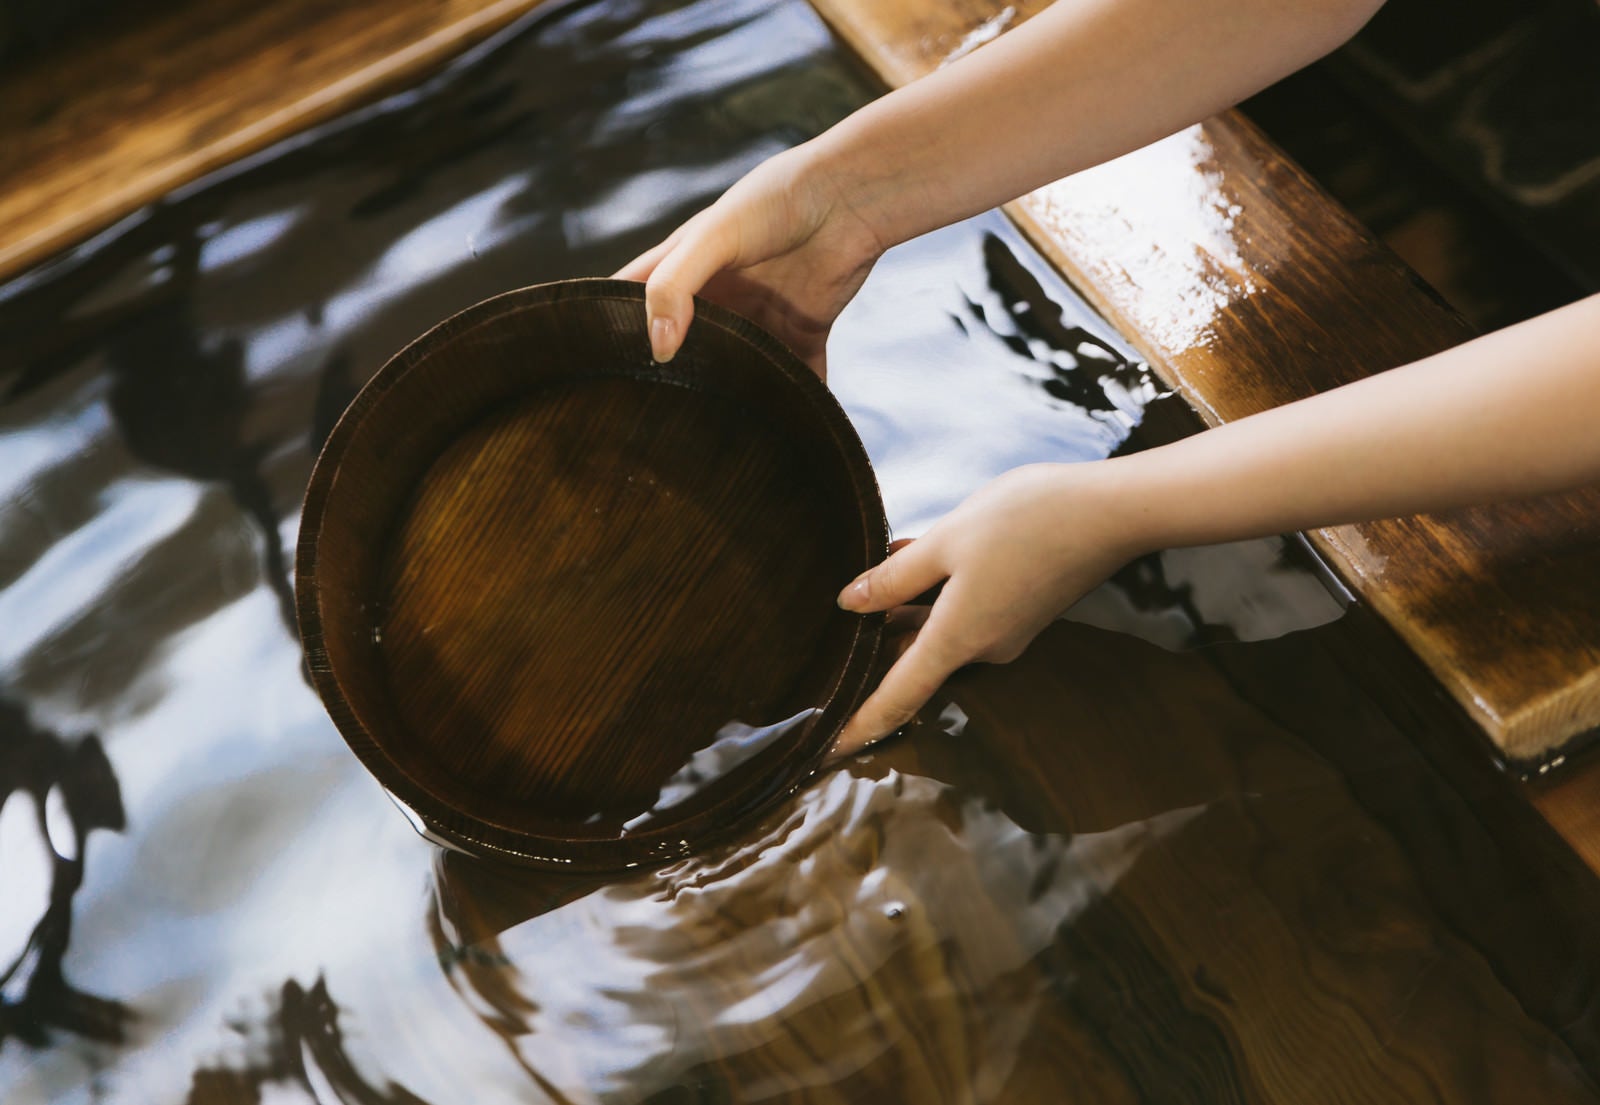 「湯船にかけ湯の桶を入れる」の写真